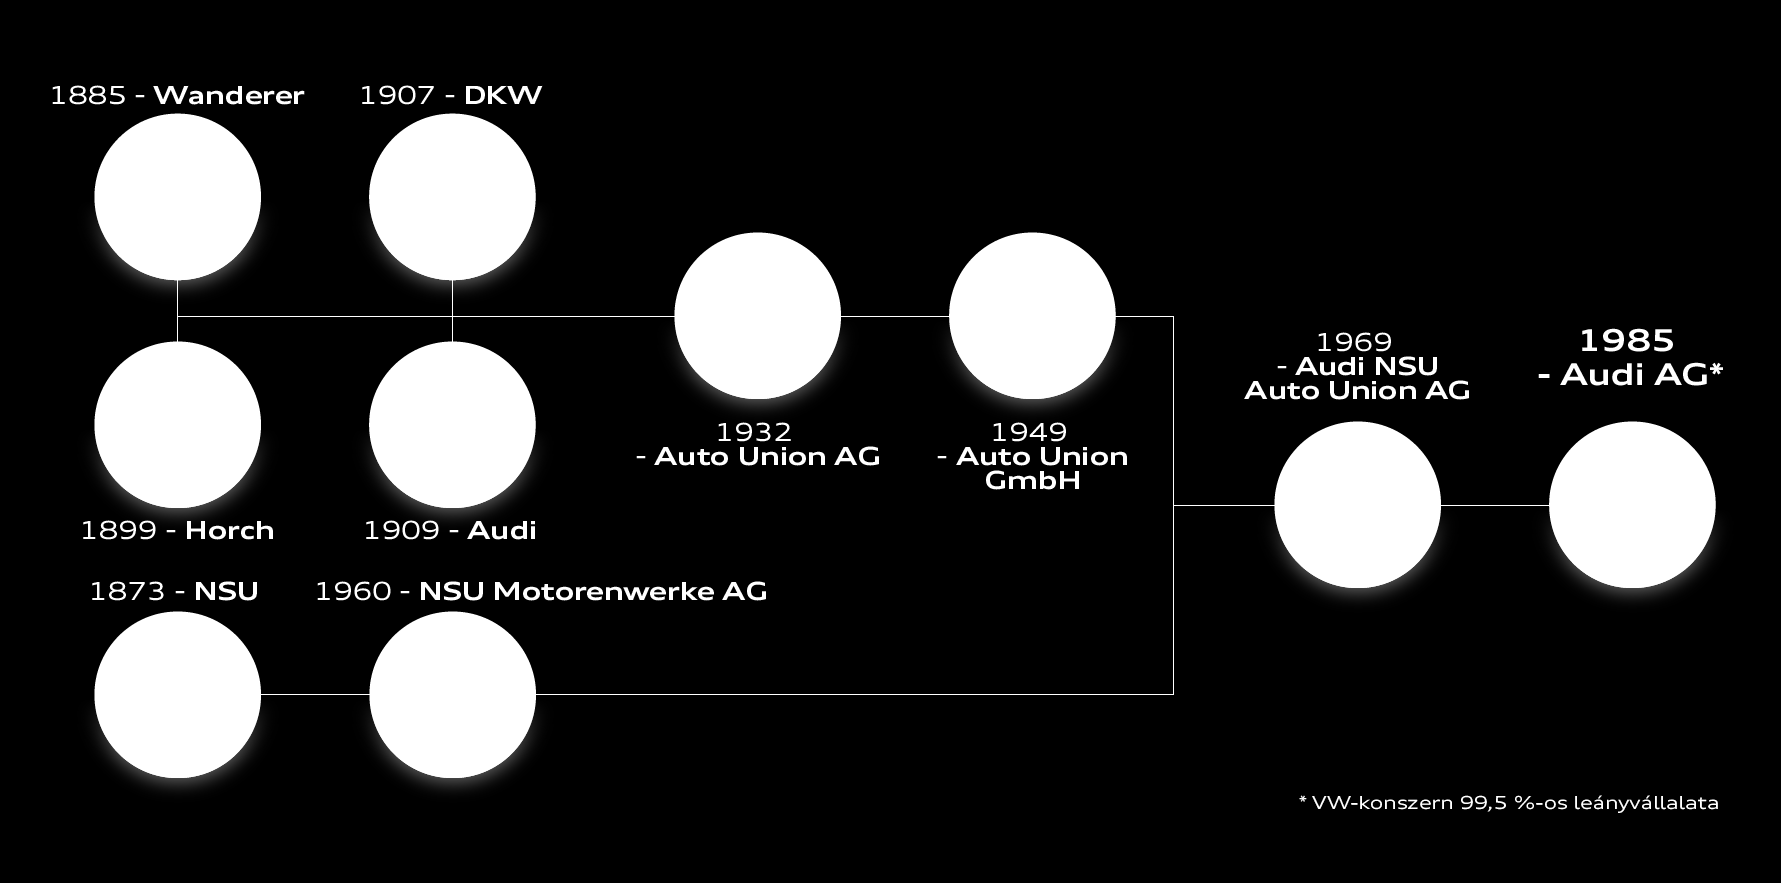 Az Audi AG története